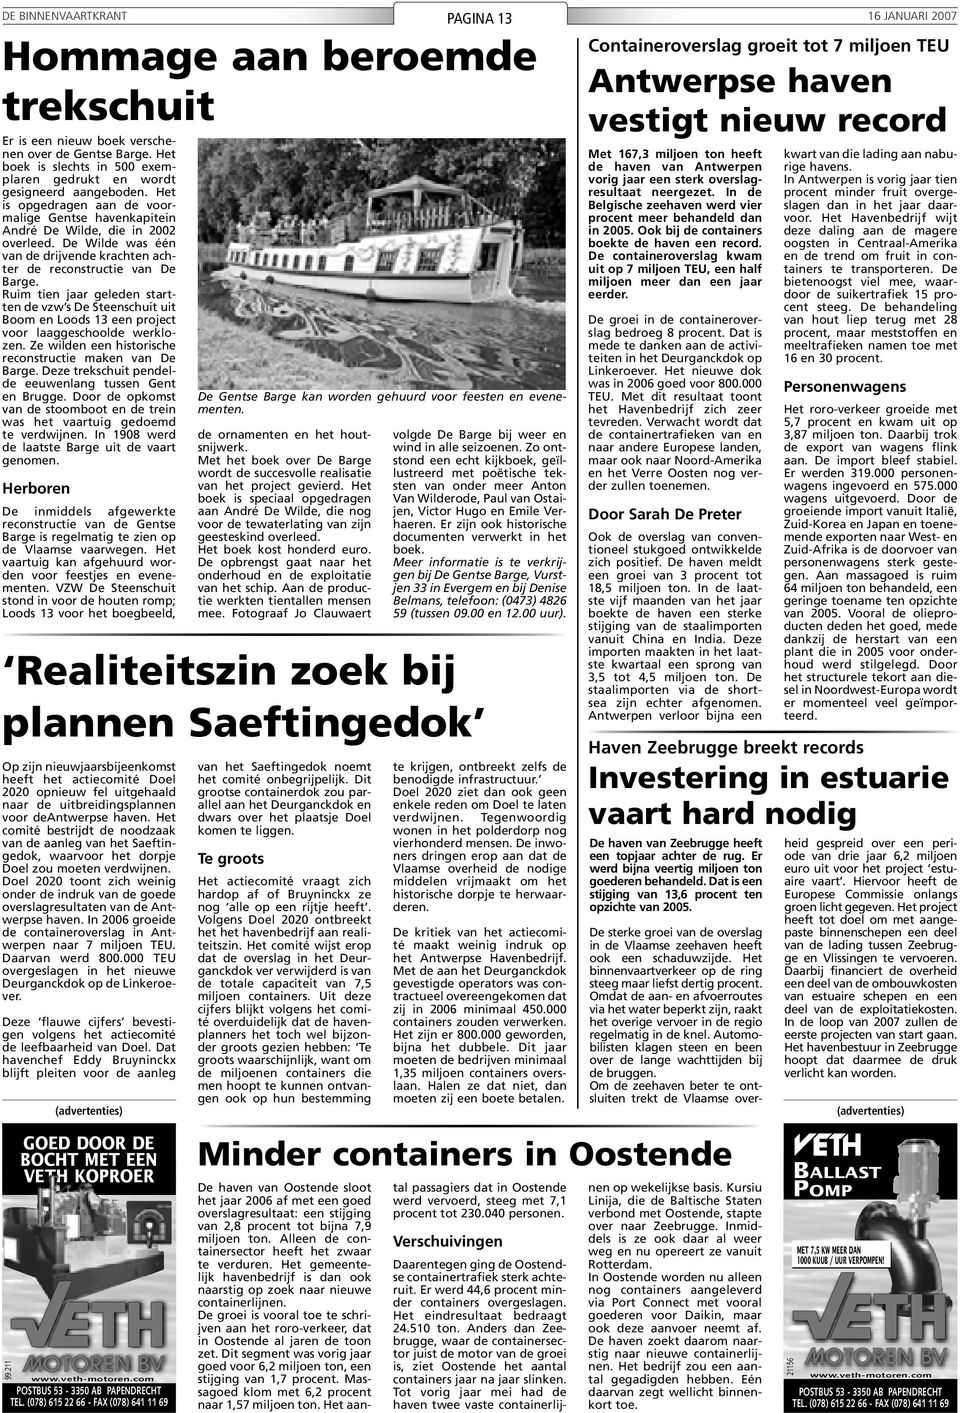 Ruim tien jaar geleden startten de vzw s De Steenschuit uit Boom en Loods 13 een project voor laaggeschoolde werklozen. Ze wilden een historische reconstructie maken van De Barge.